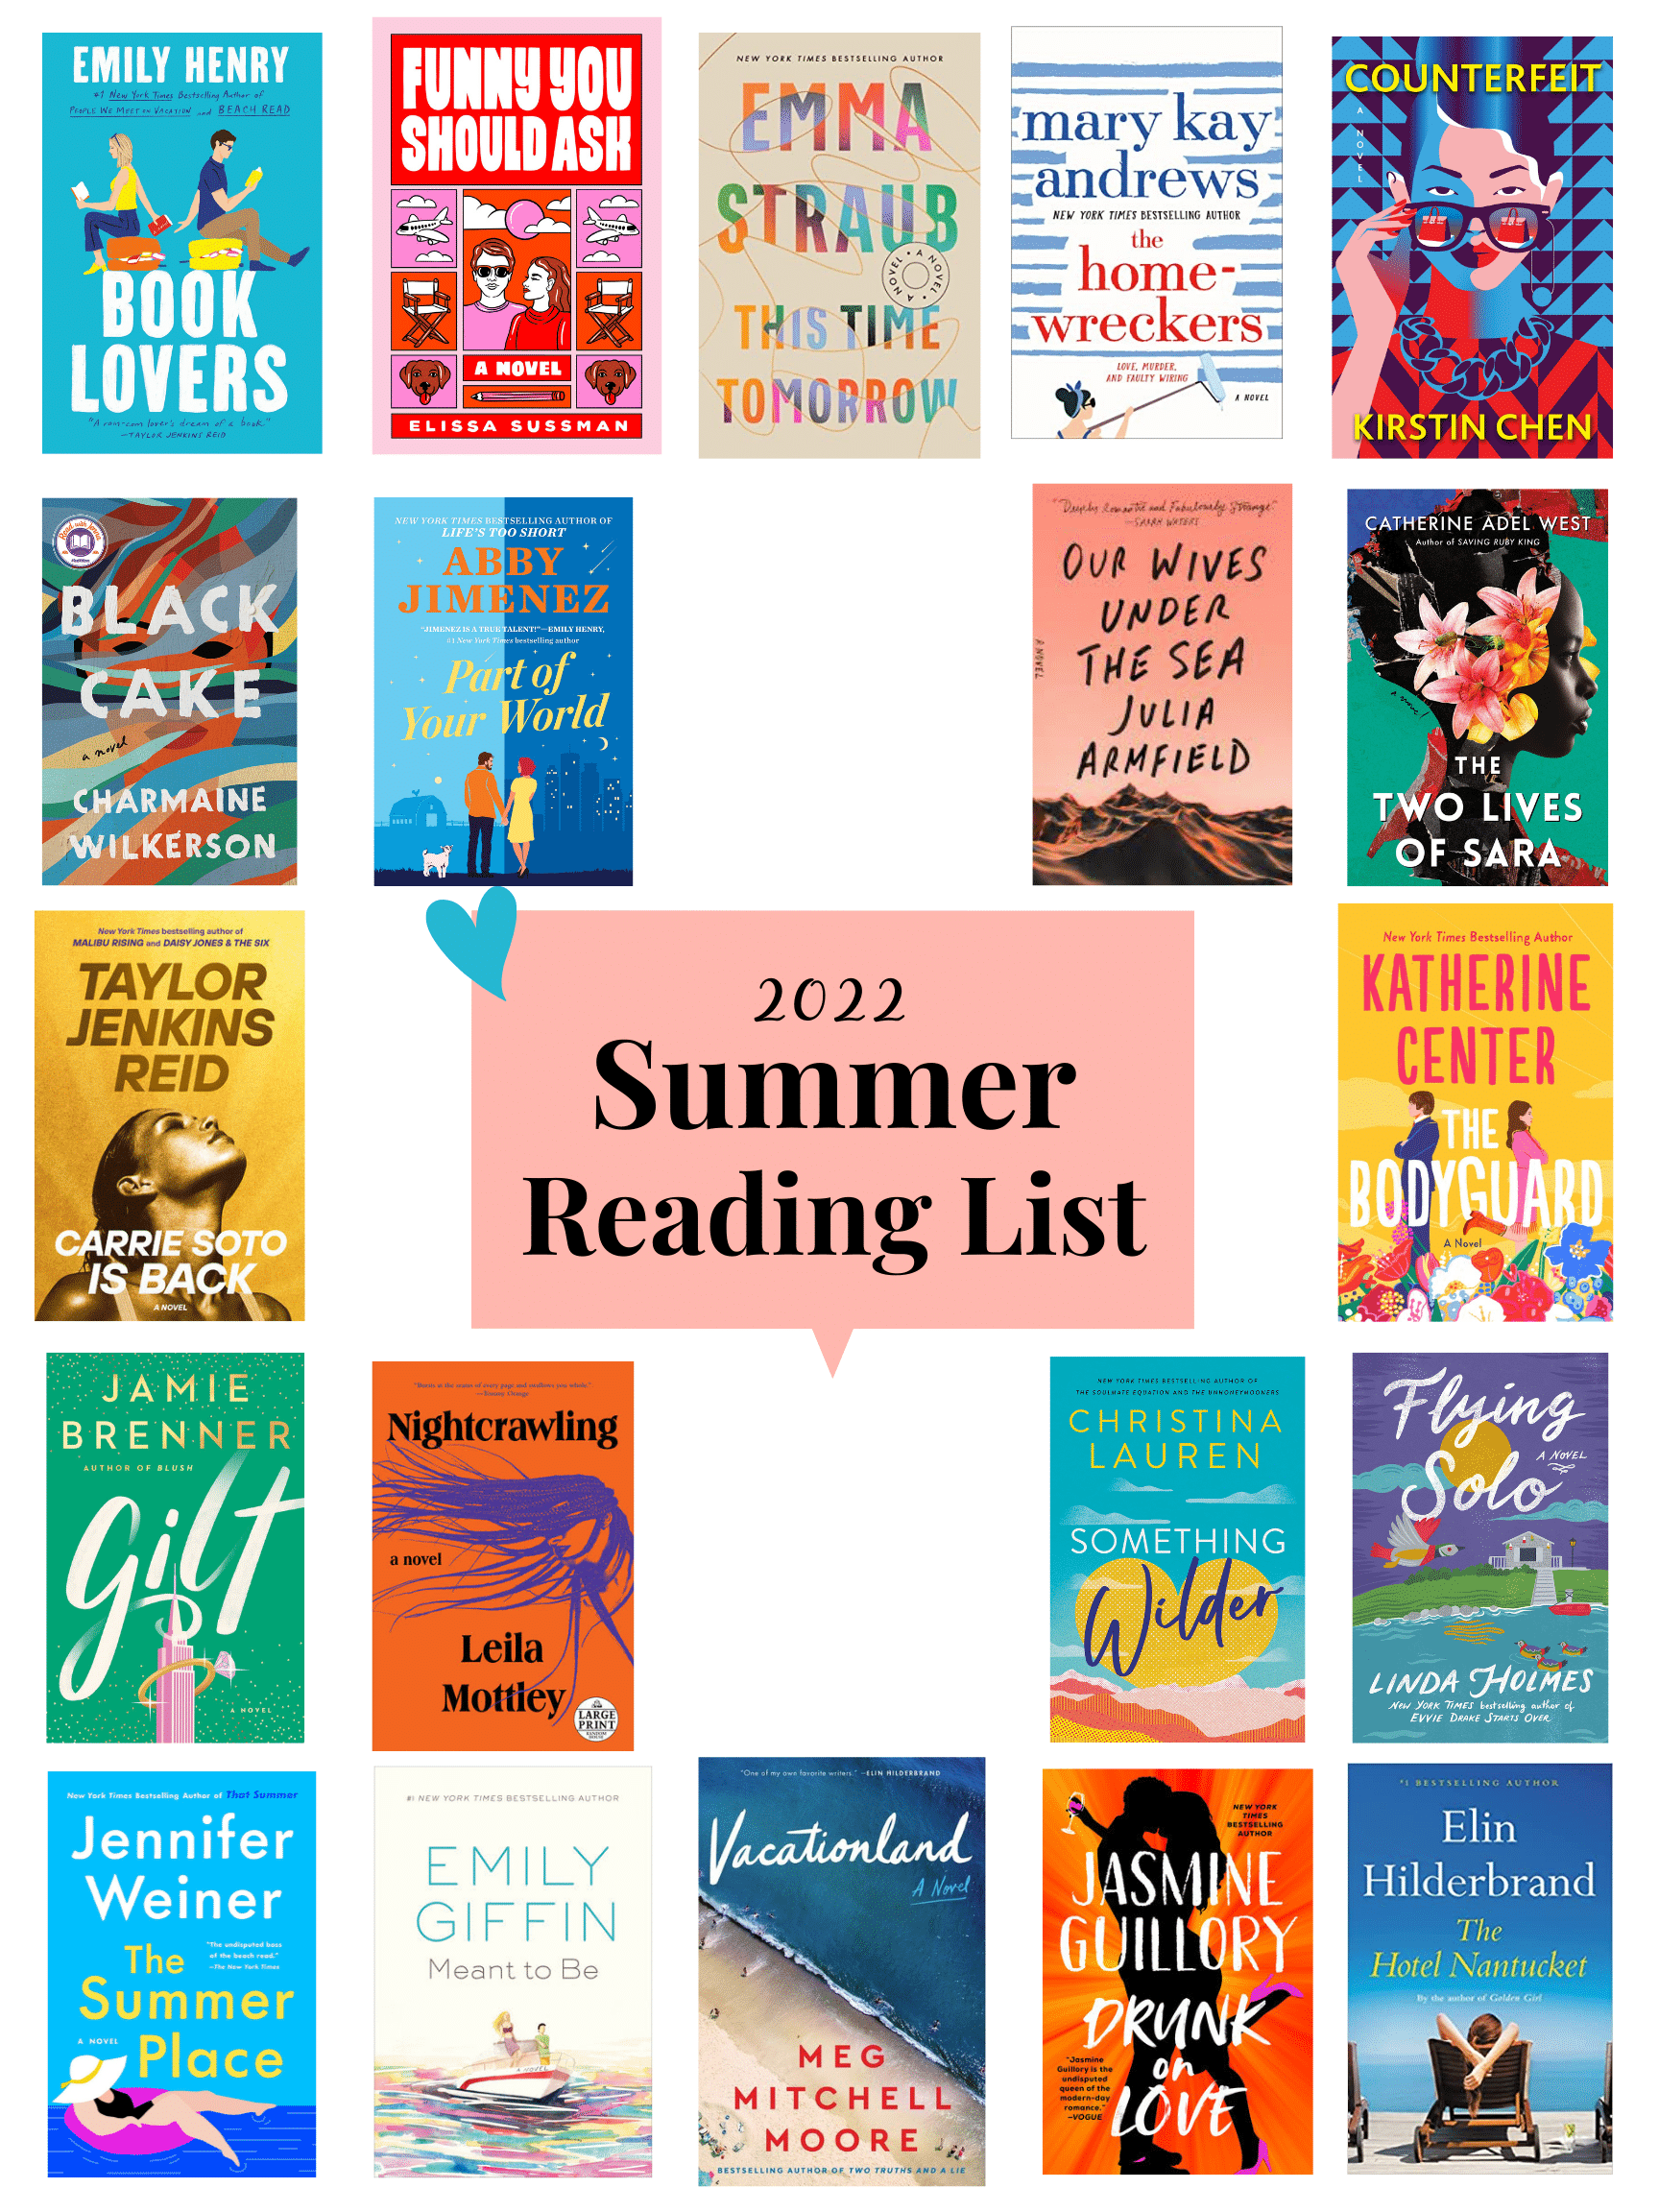 2022 Summer Reading List - My 2022 Summer Reading List